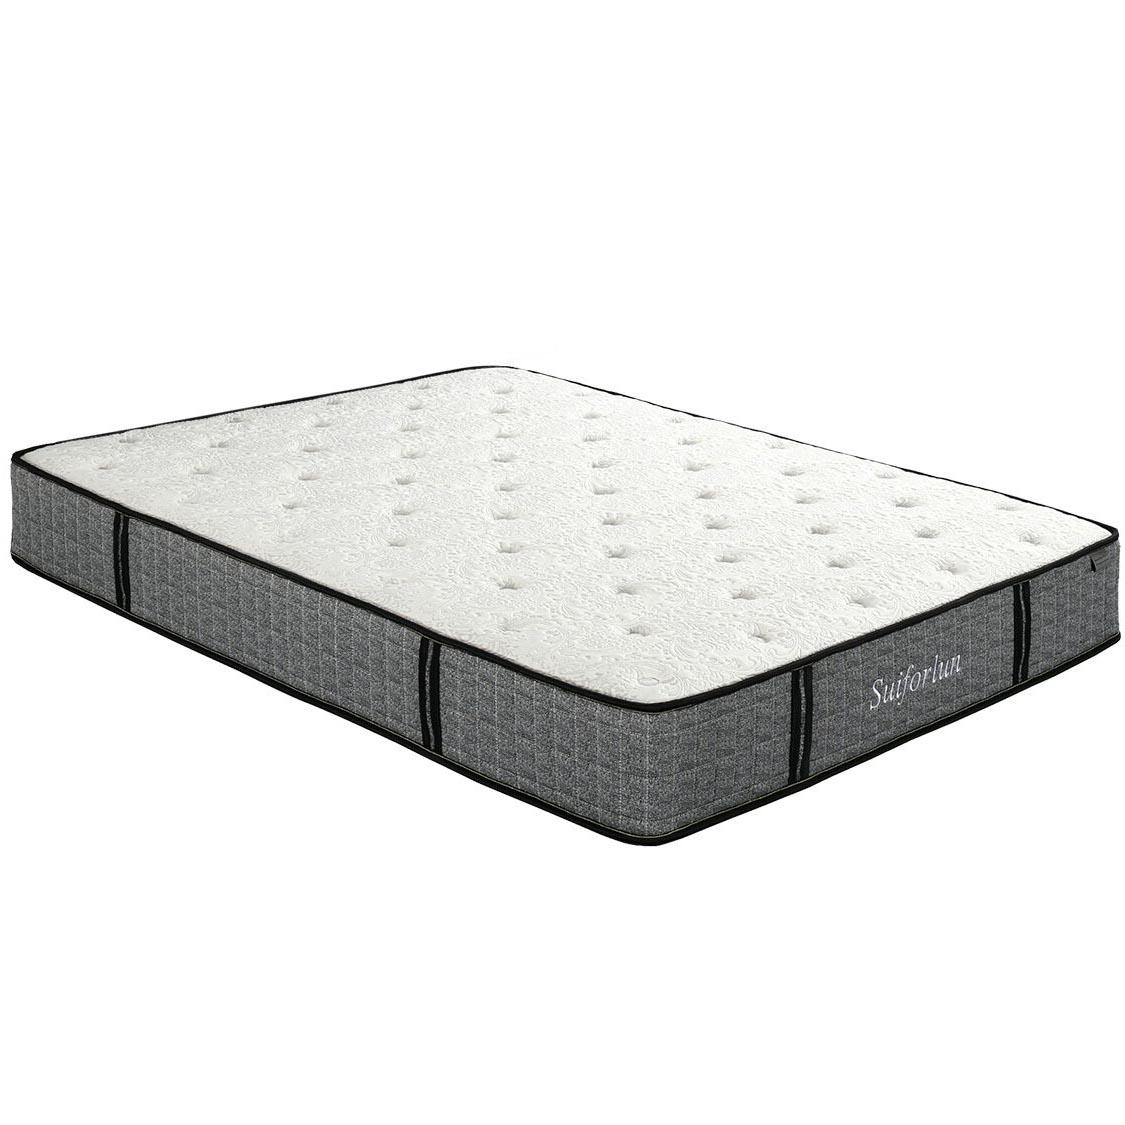 Suiforlun mattress durable twin hybrid mattress series for sleeping-2